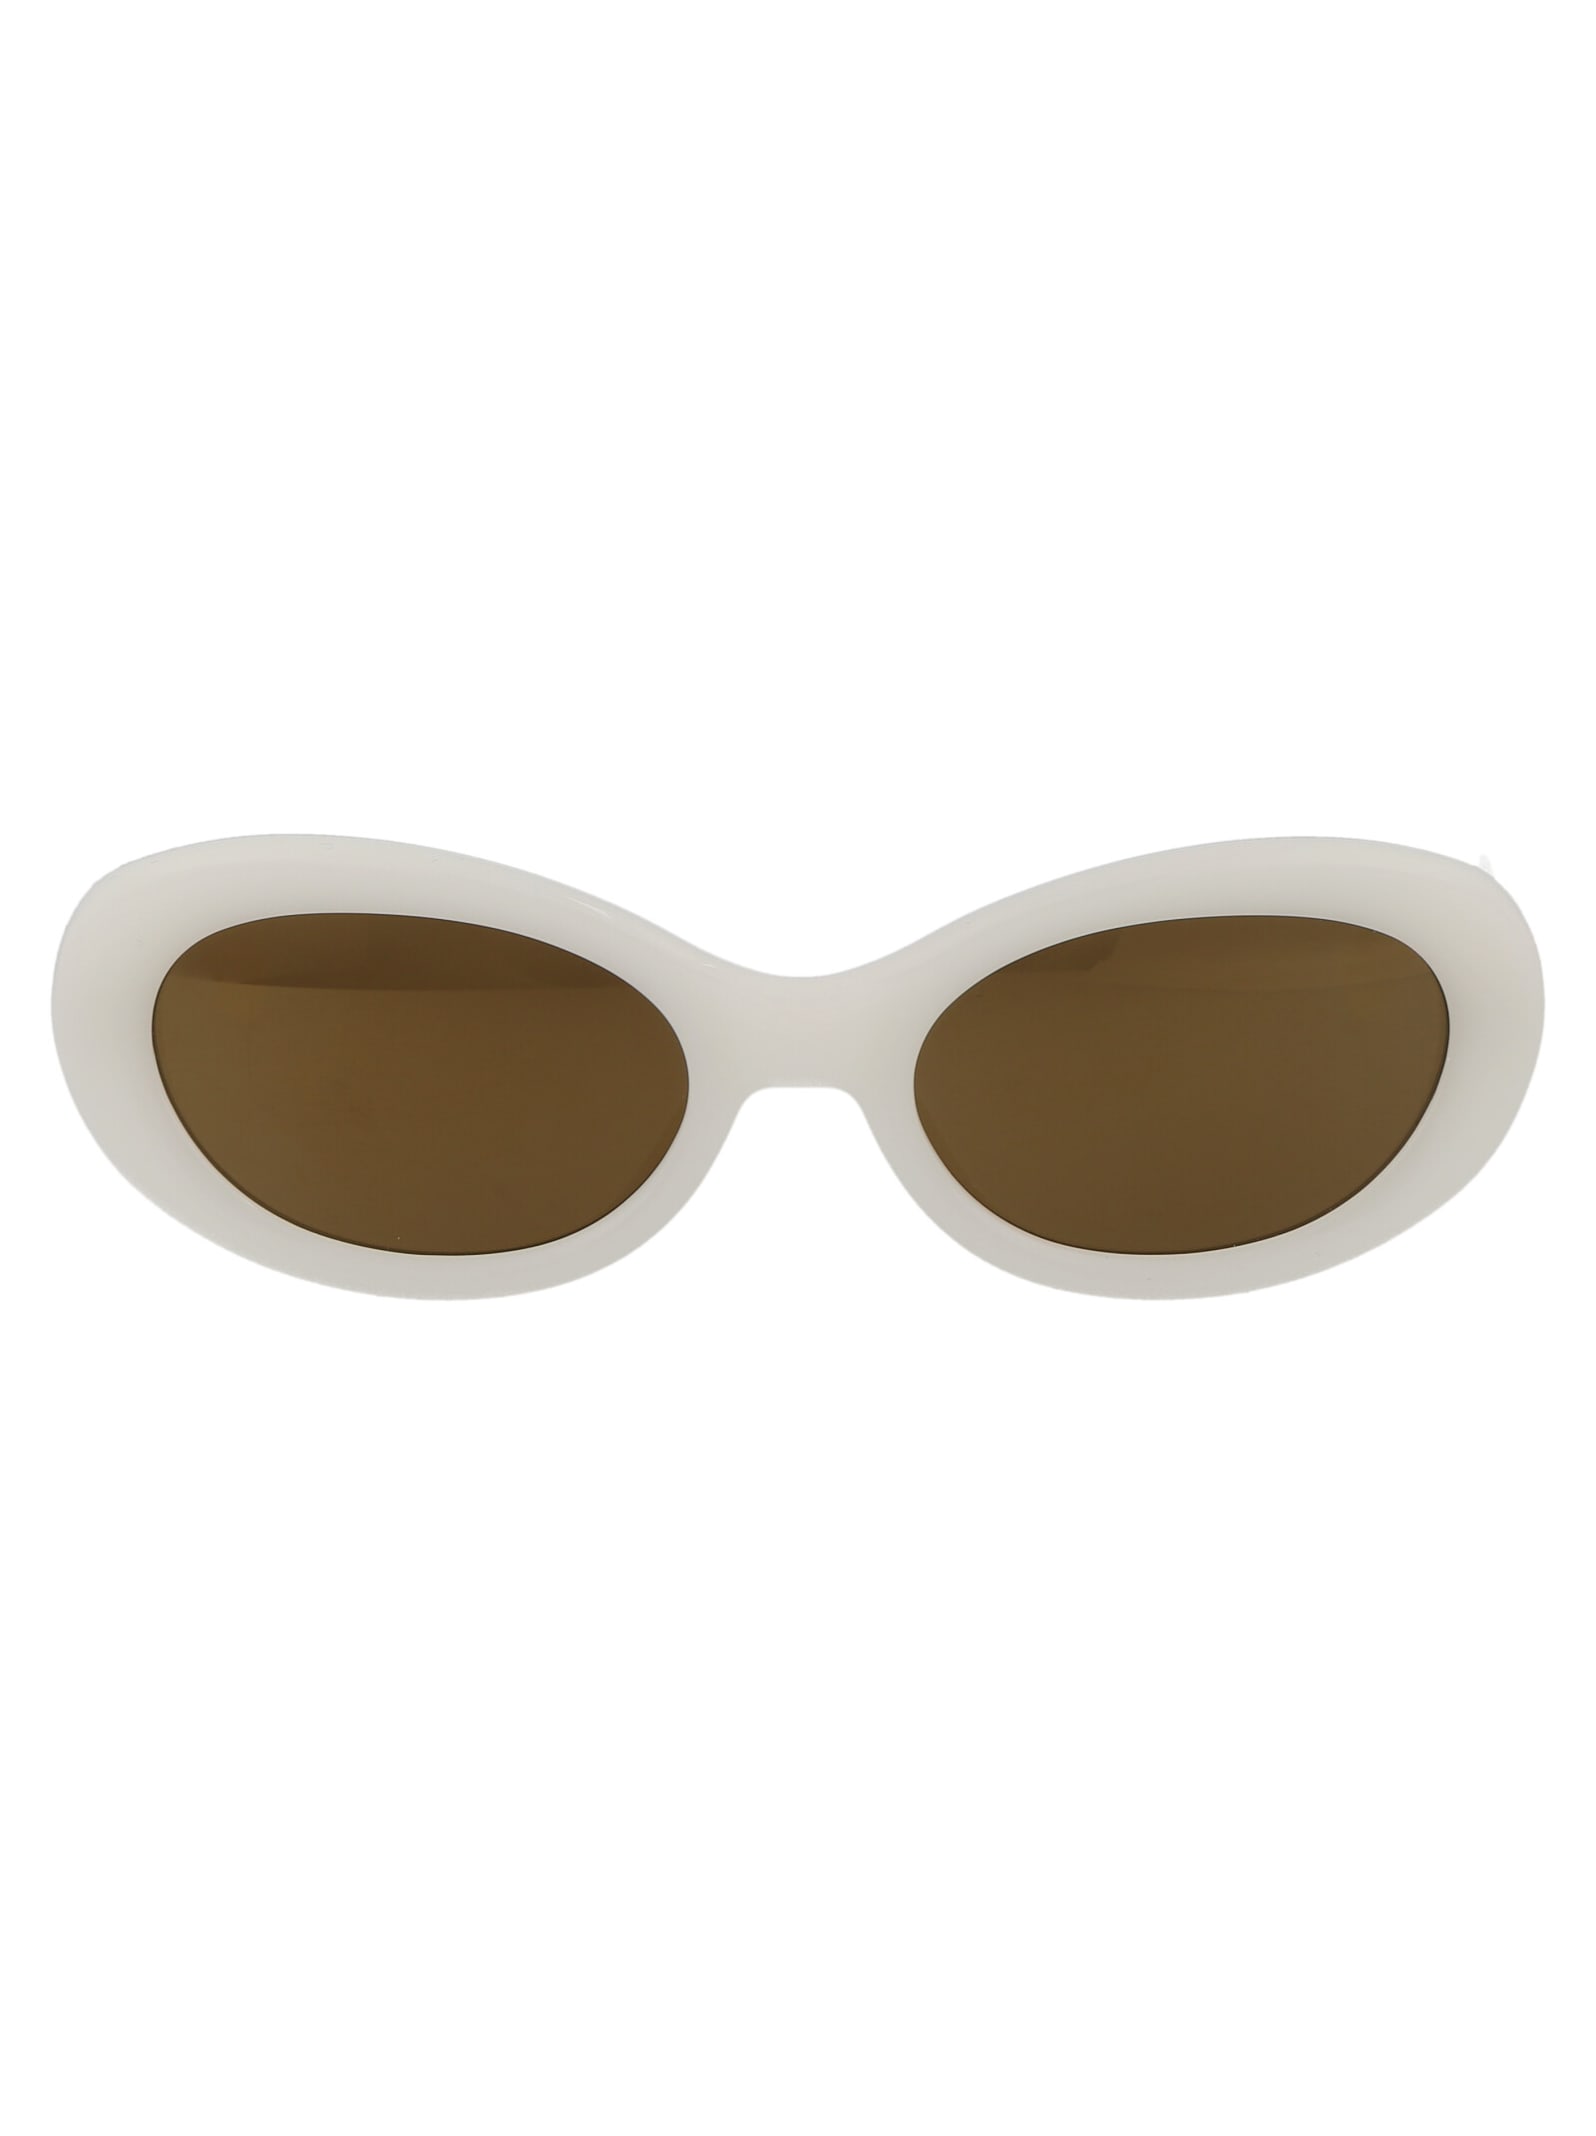 Shop Dries Van Noten Dvn211c7sun Sunglasses In White/silver/brownmirror